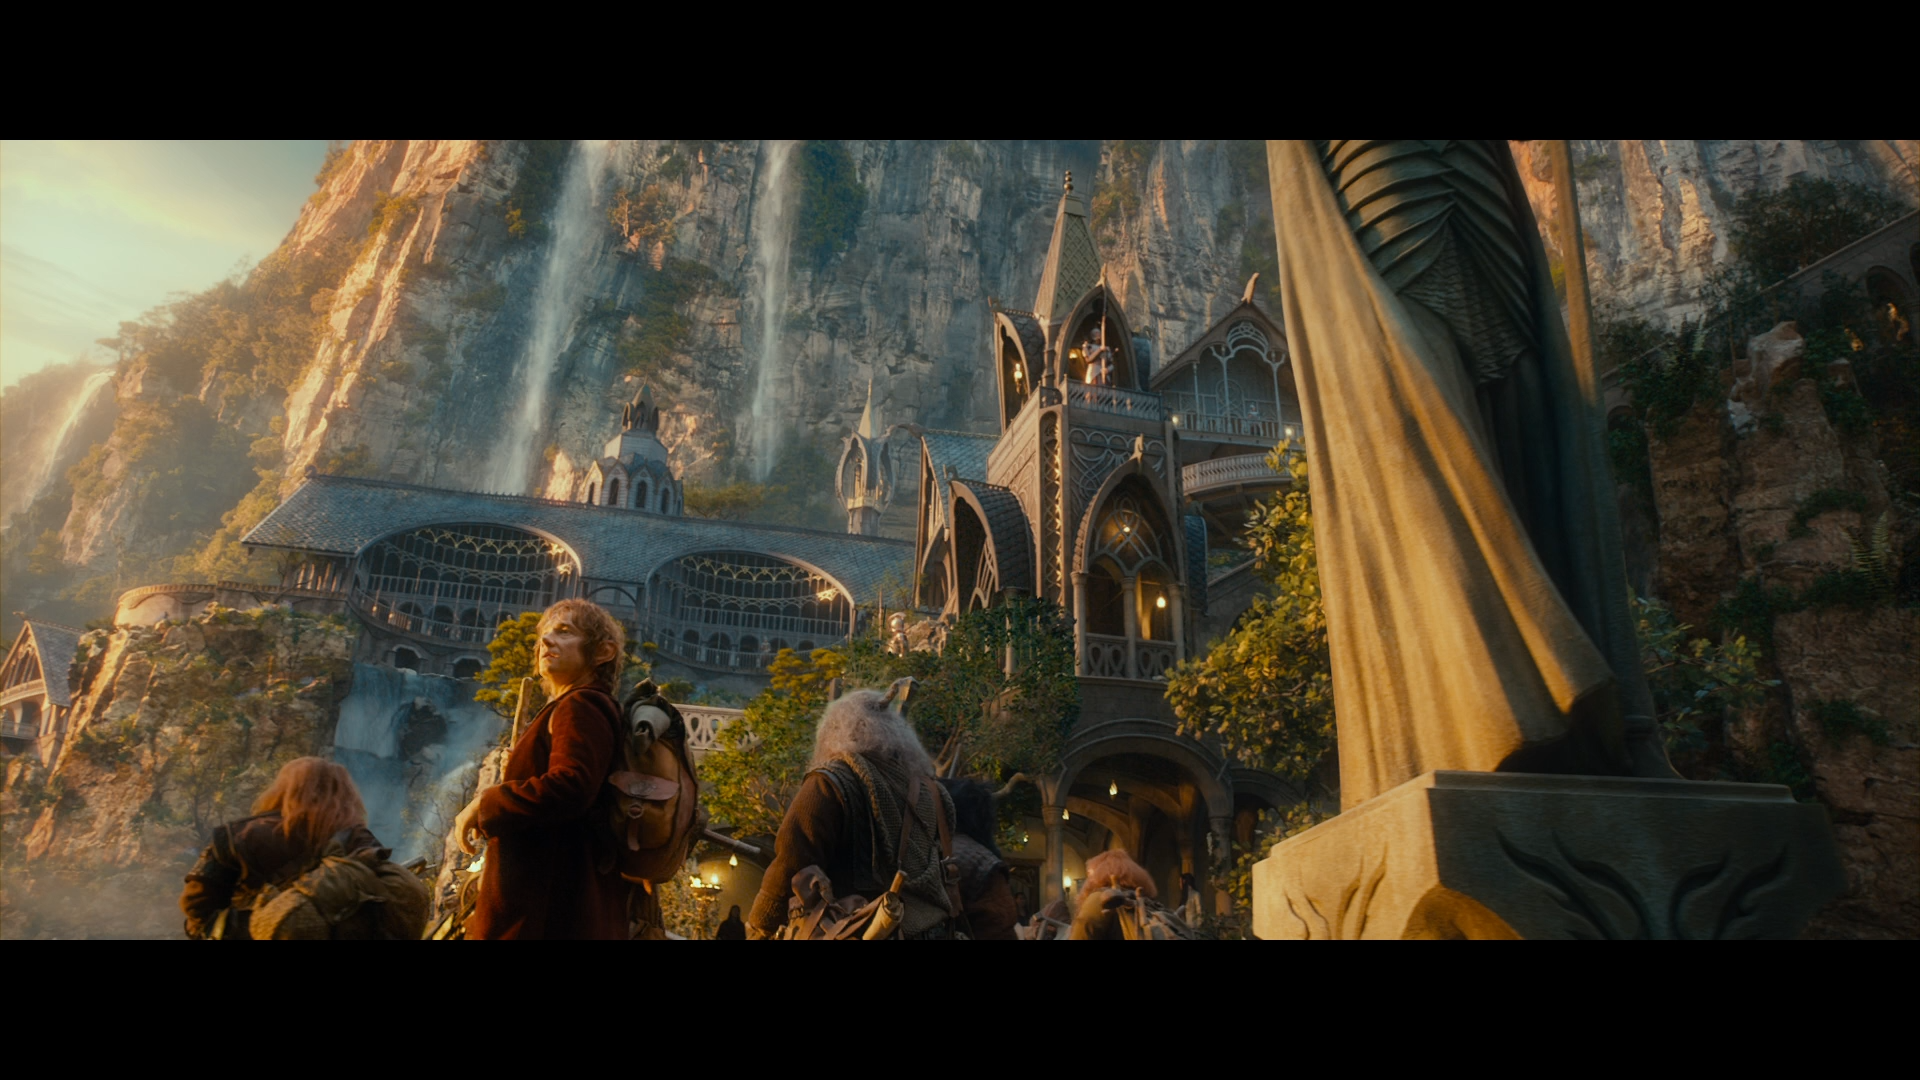 [霍比特人1].The.Hobbit.An.Unexpected.Journey.2012.EXTENDED.BluRay.1080p.AVC.DTS-HD.MA.7.1-Tay    39.17G+ ]9 o/ X5 e- o( Q; p& i2 p7 D" C-12.png